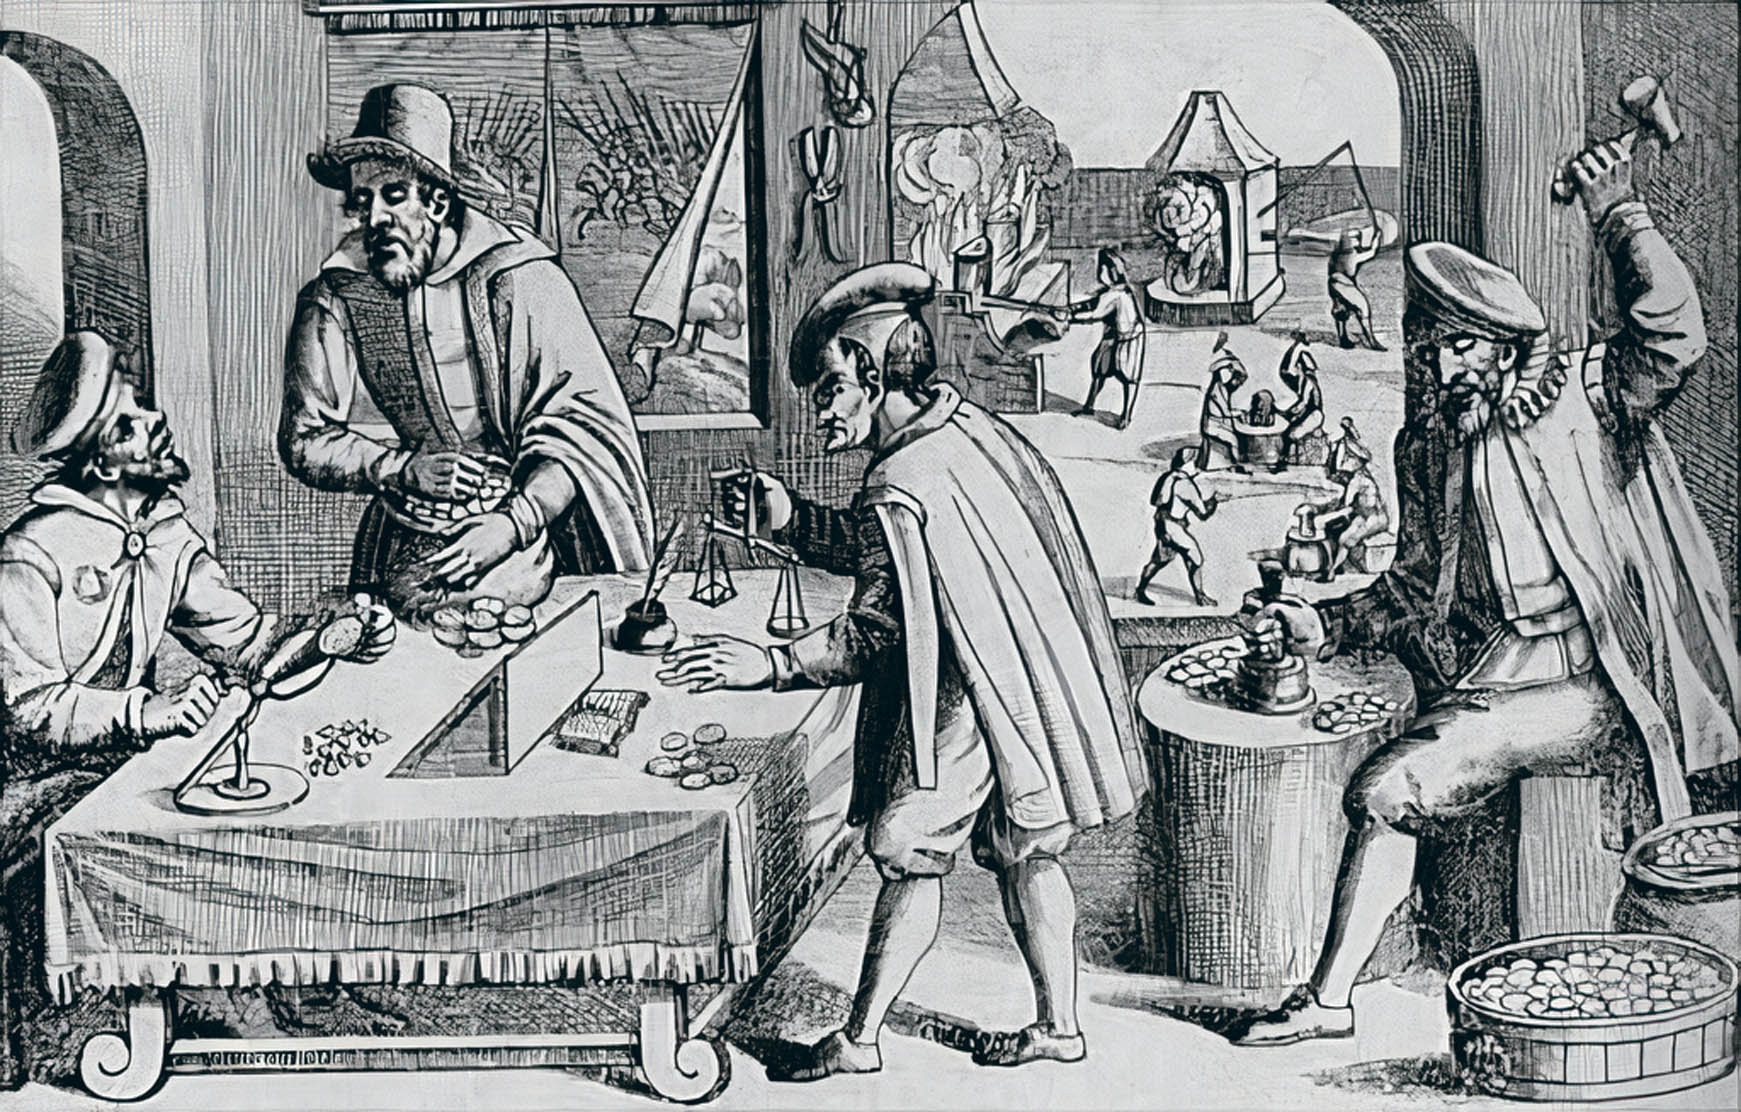 Malostranský obchodník Hans de Witte zbohatl na ražbě nekvalitních mincí a stal se hlavním bankéřem a vojenským dodavatelem českého velmože a císařského generála Albrechta z Valdštejna.